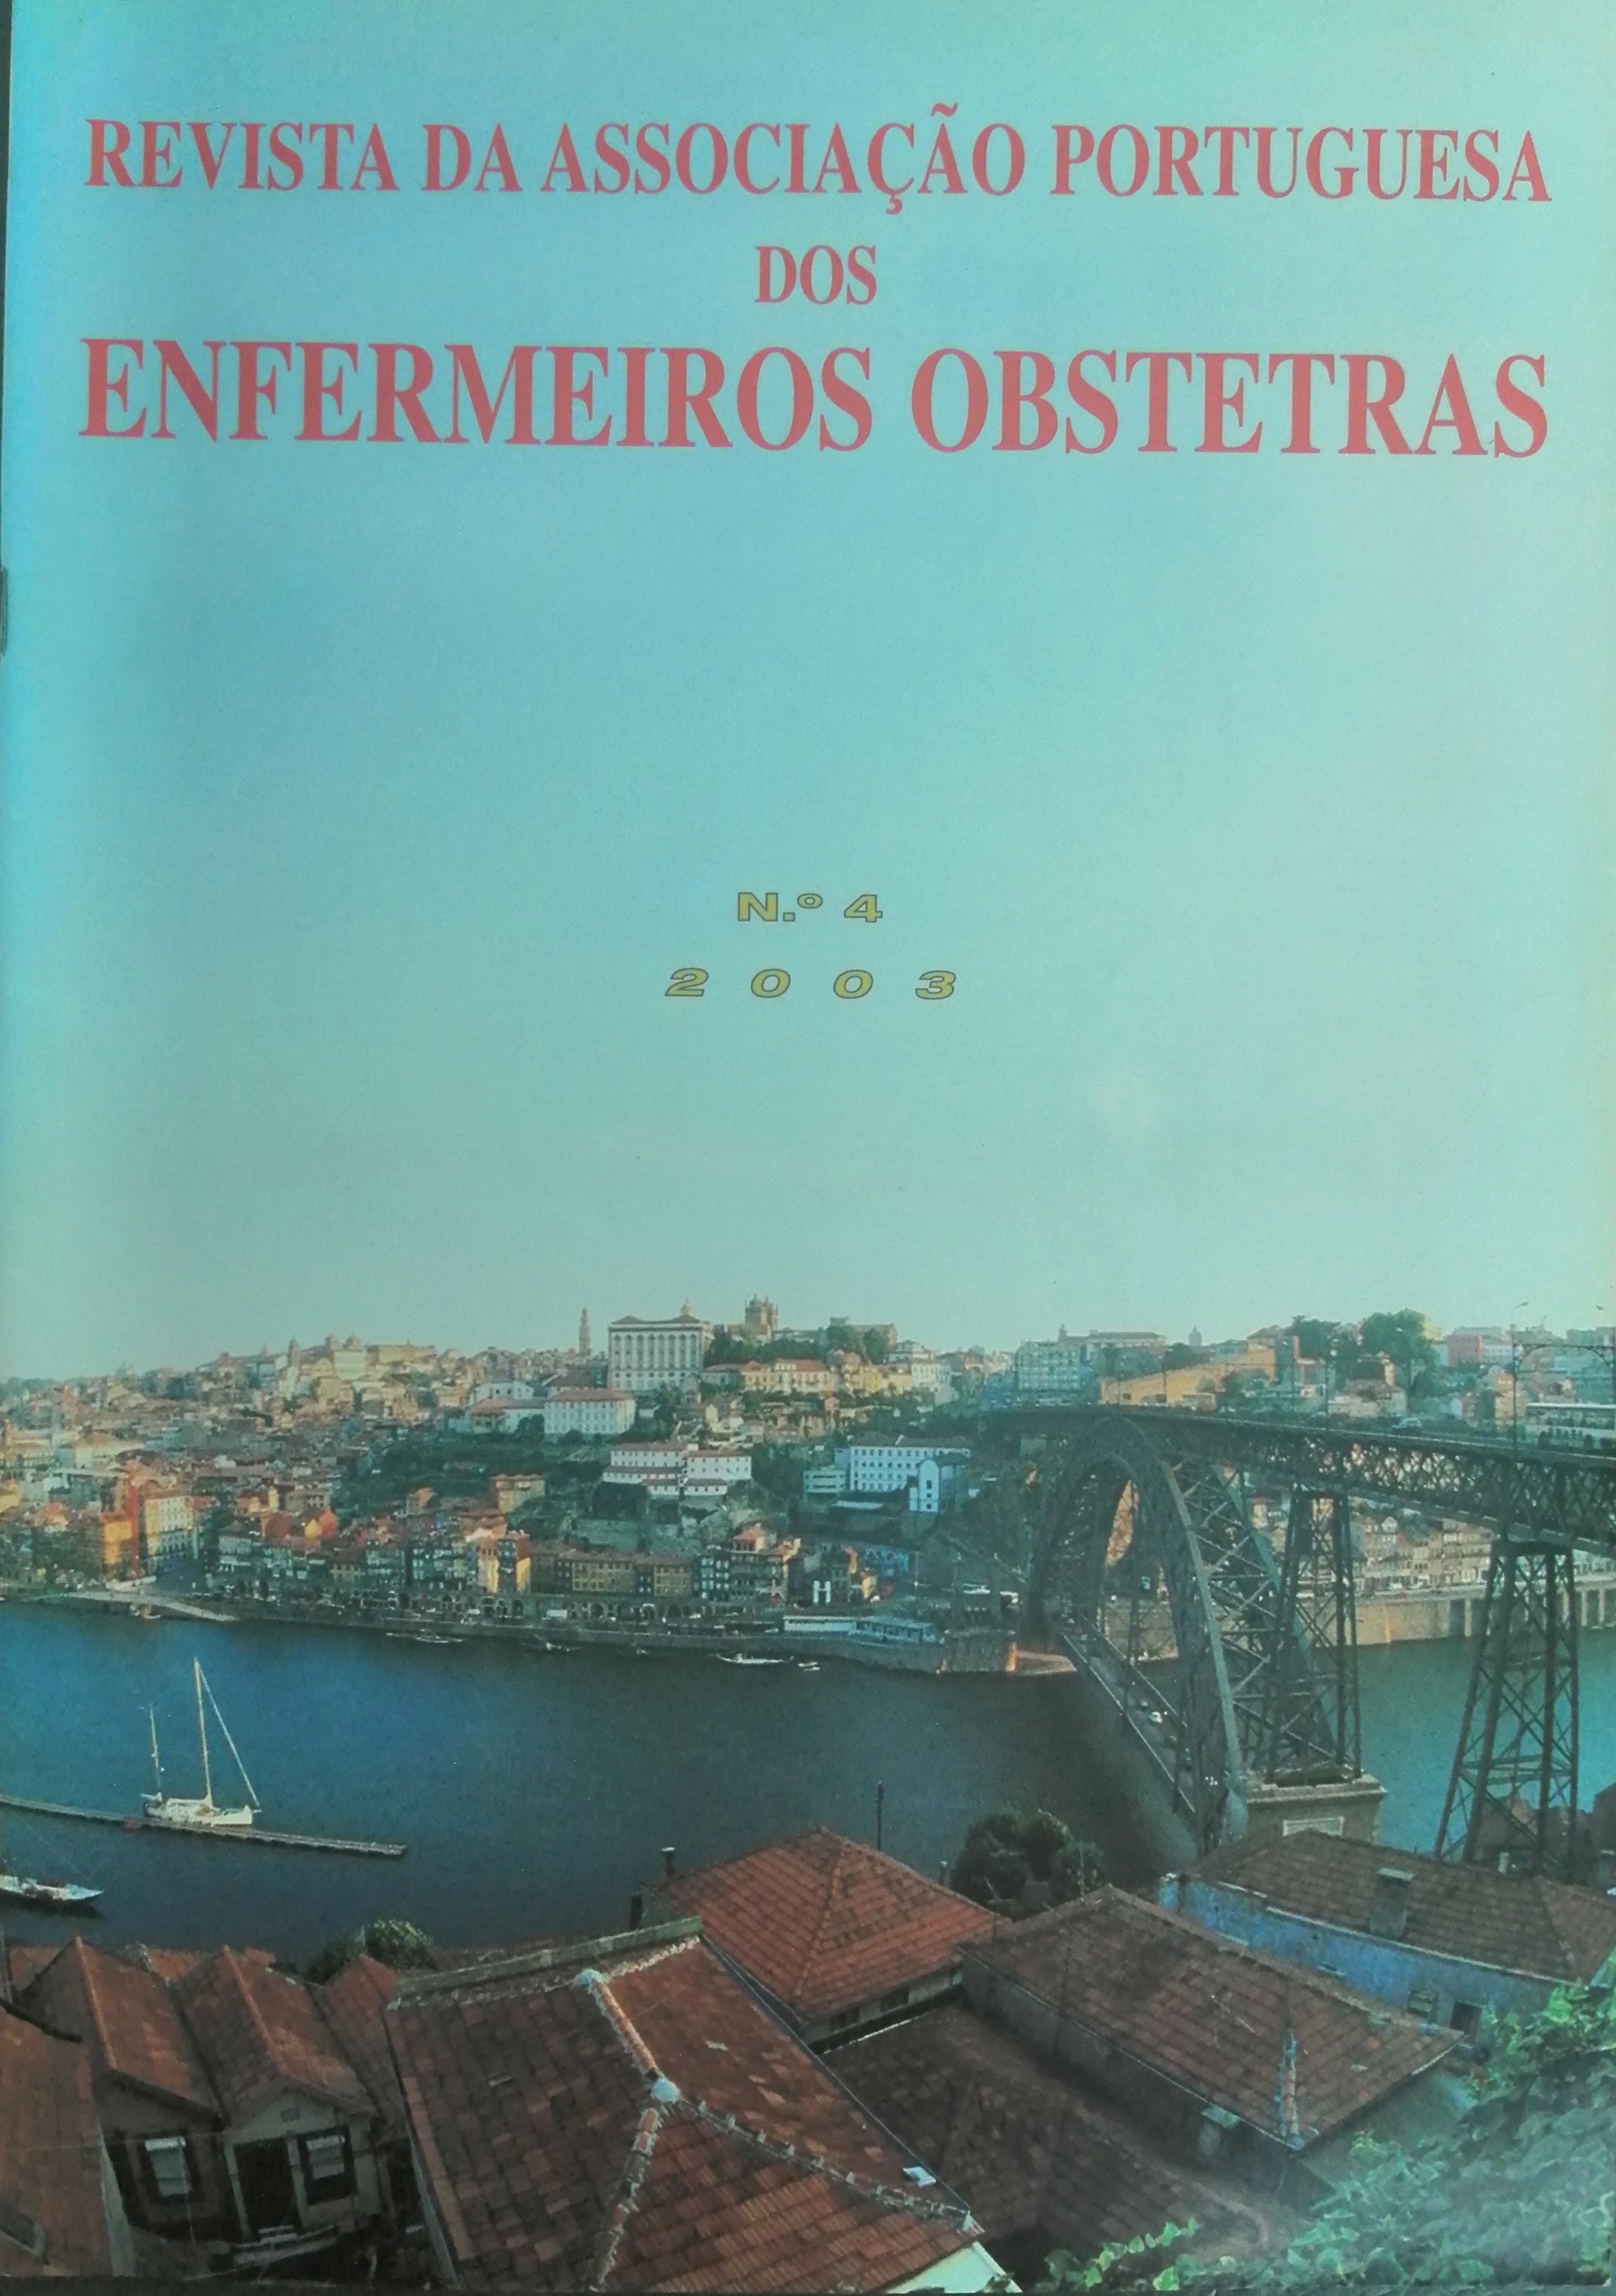 					Ver N.º 4 (2003): Revista da Associação Portuguesa de Enfermeiros Obstetras
				